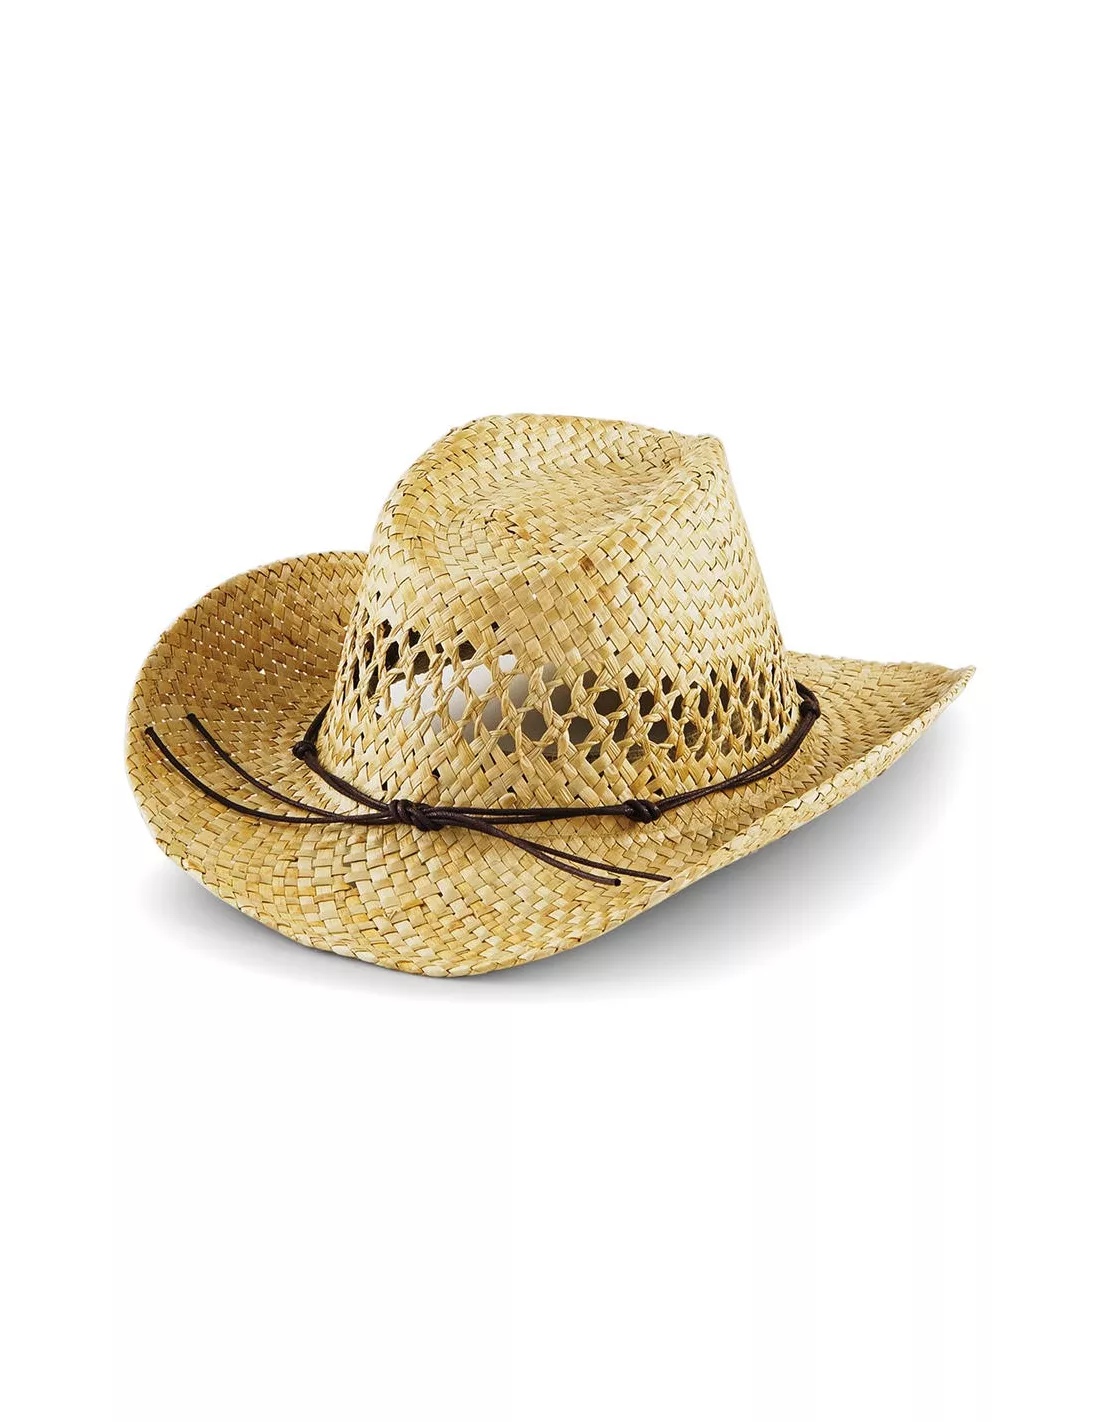 Sombrero de paja Vaquero Cowboy Tejano